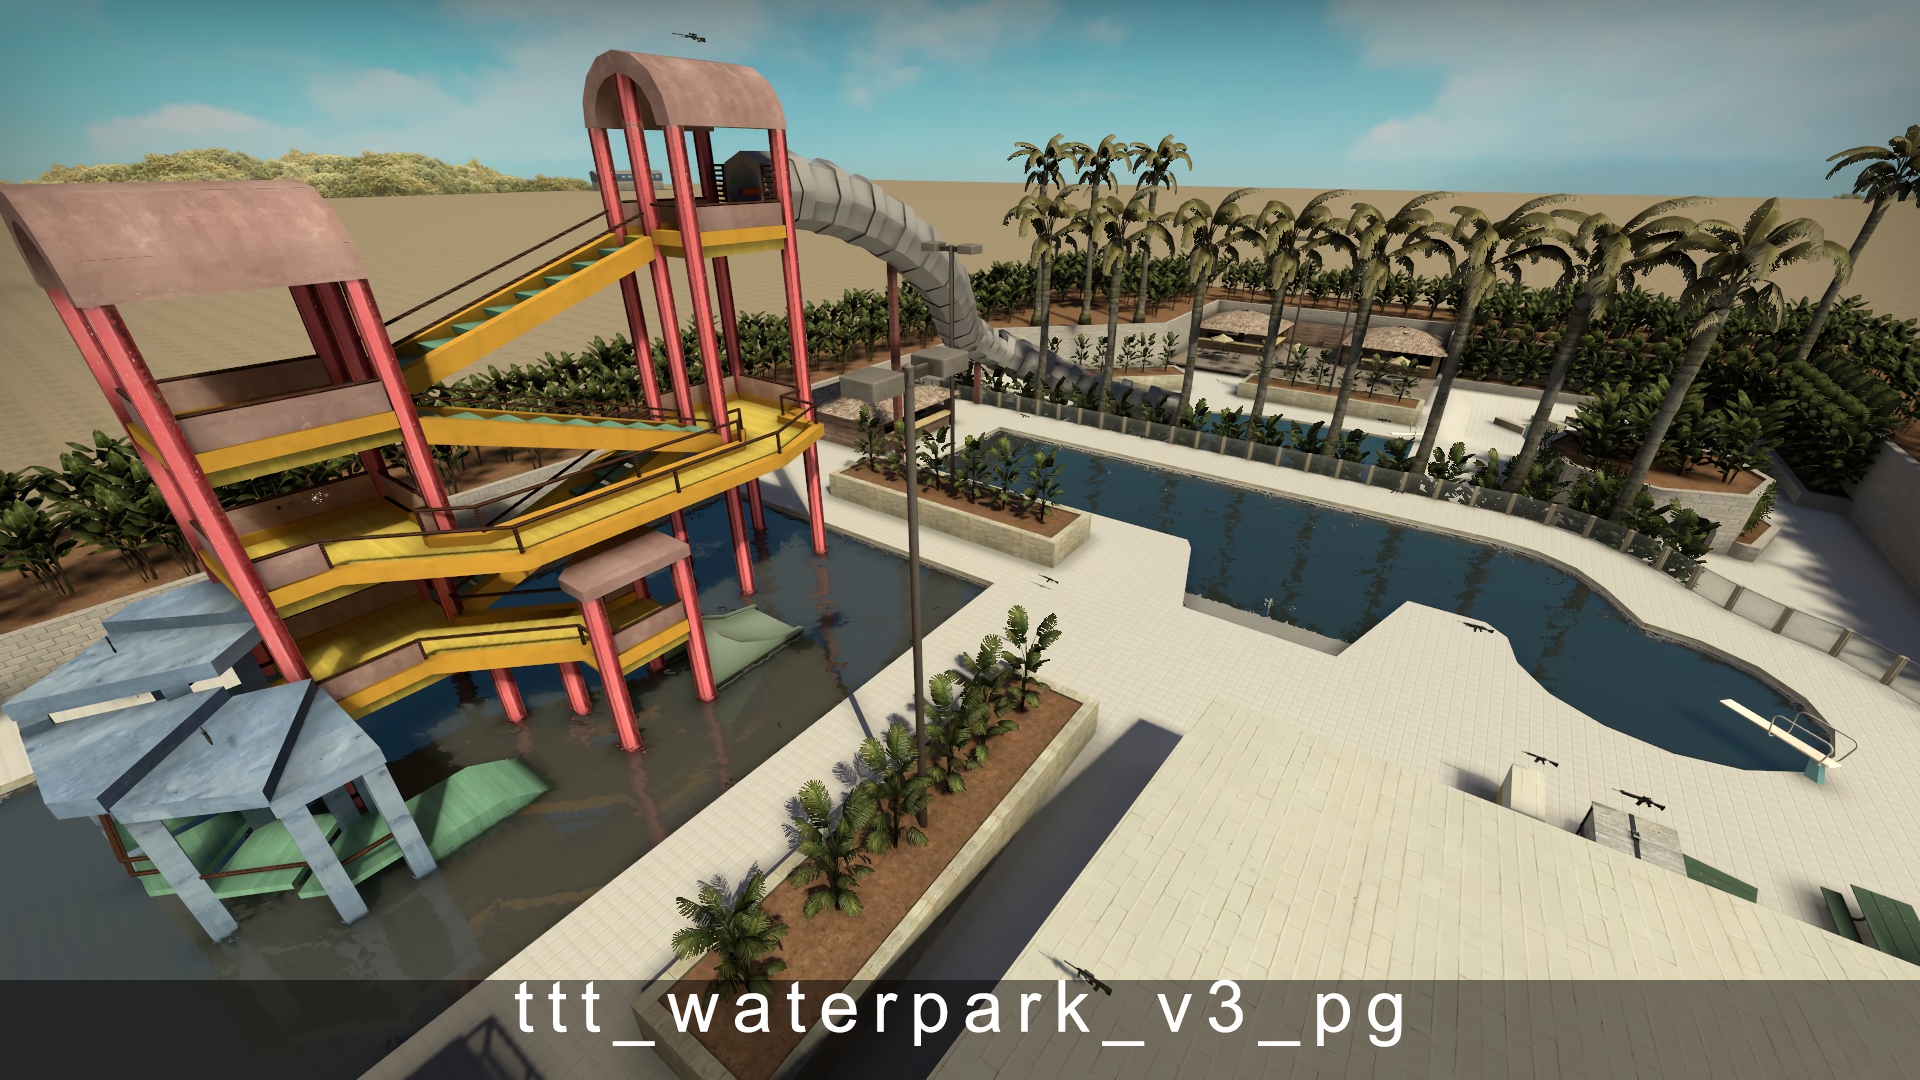 ttt_waterpark_v3_pg.jpg